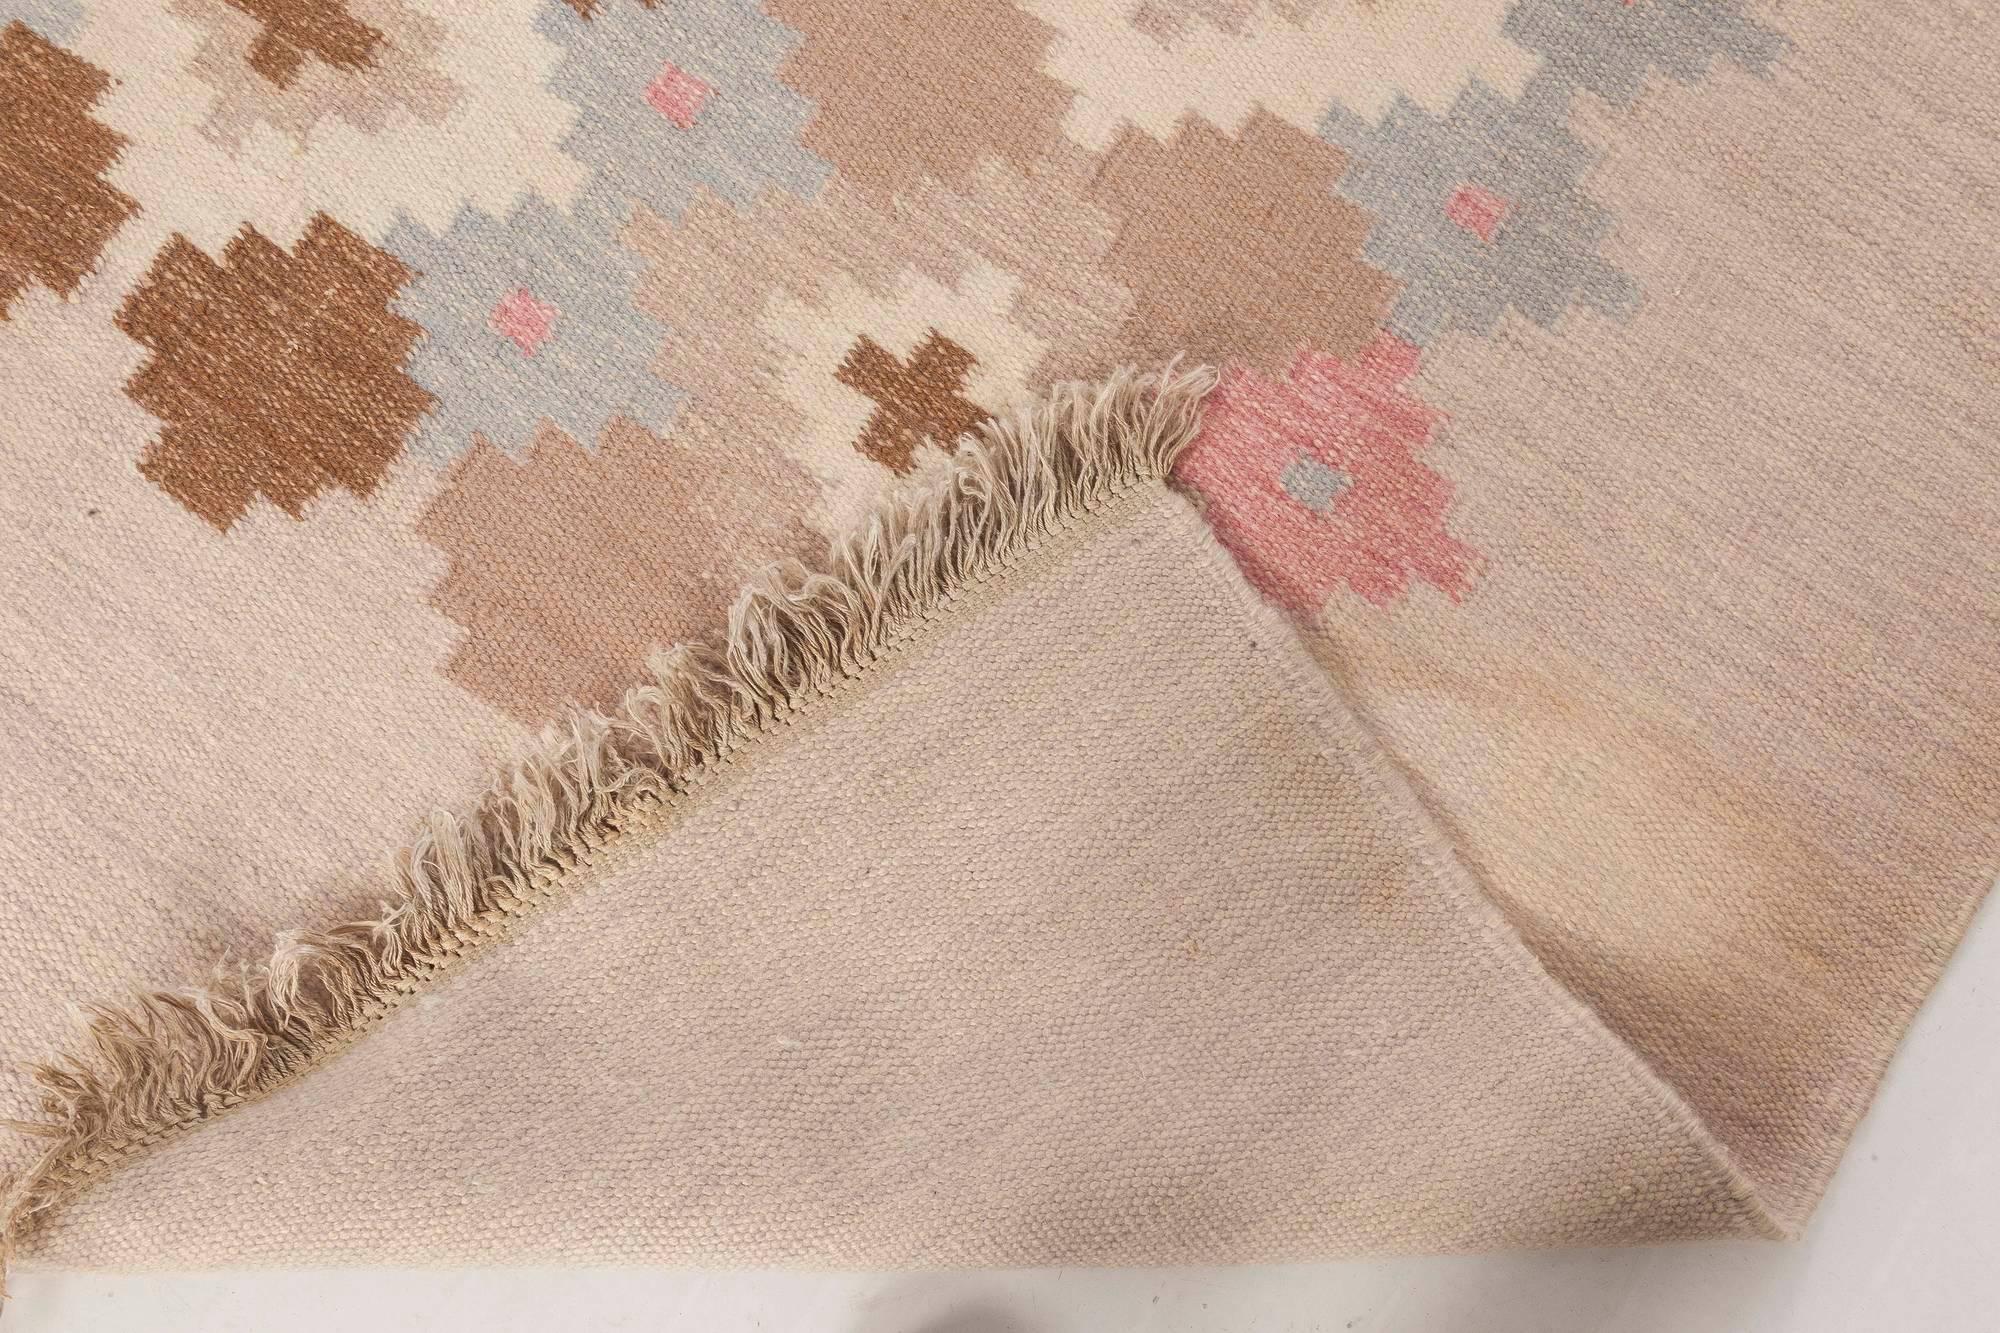 Mid-20th century Swedish Beige, Pink, Brown, Gray Wool Rug by Doris Leslie Blau 1